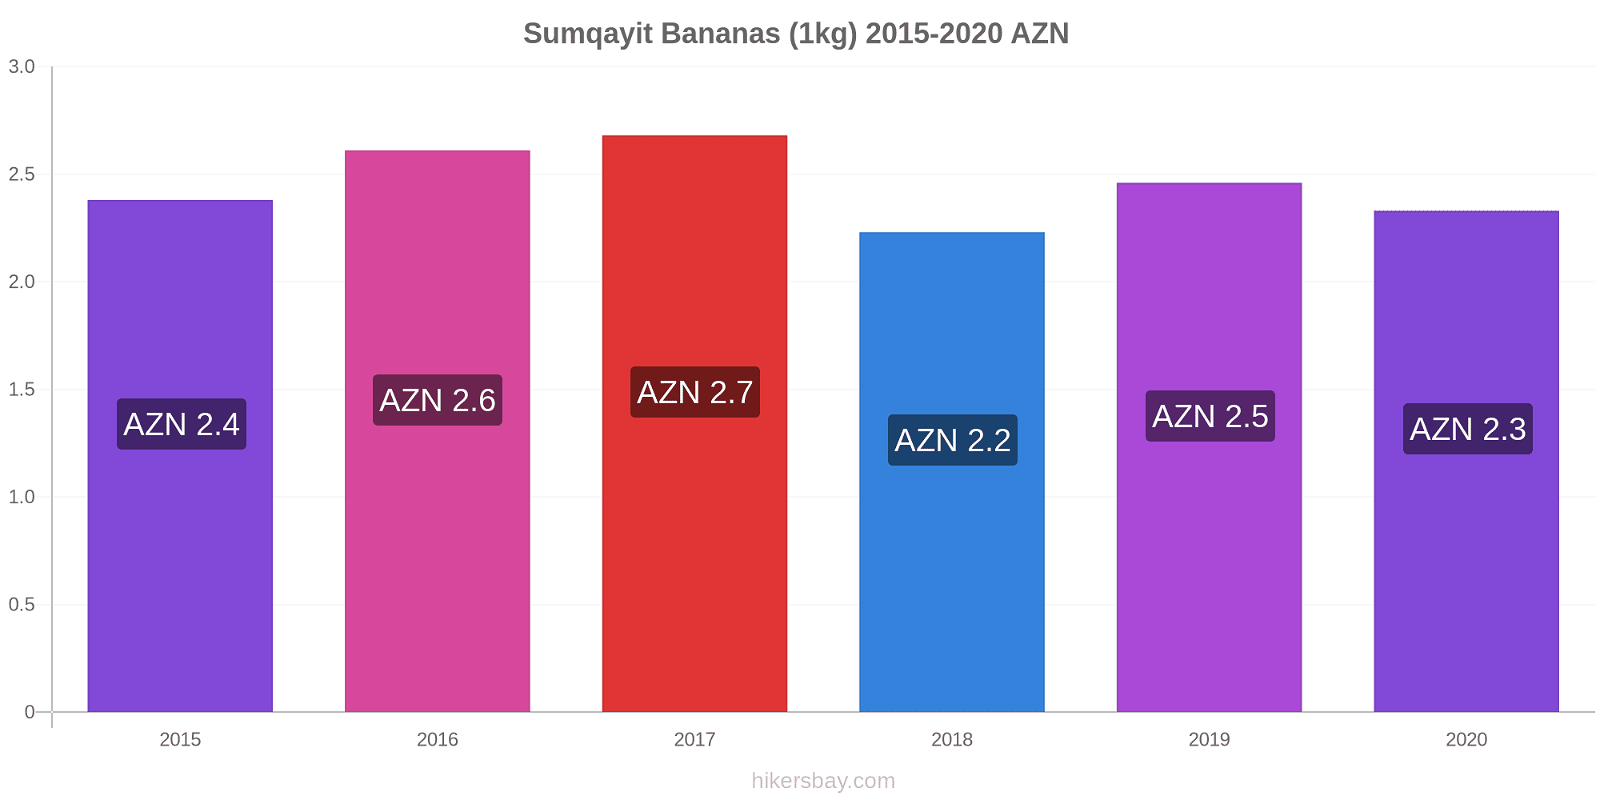 Sumqayit variação de preço Banana (1kg) hikersbay.com